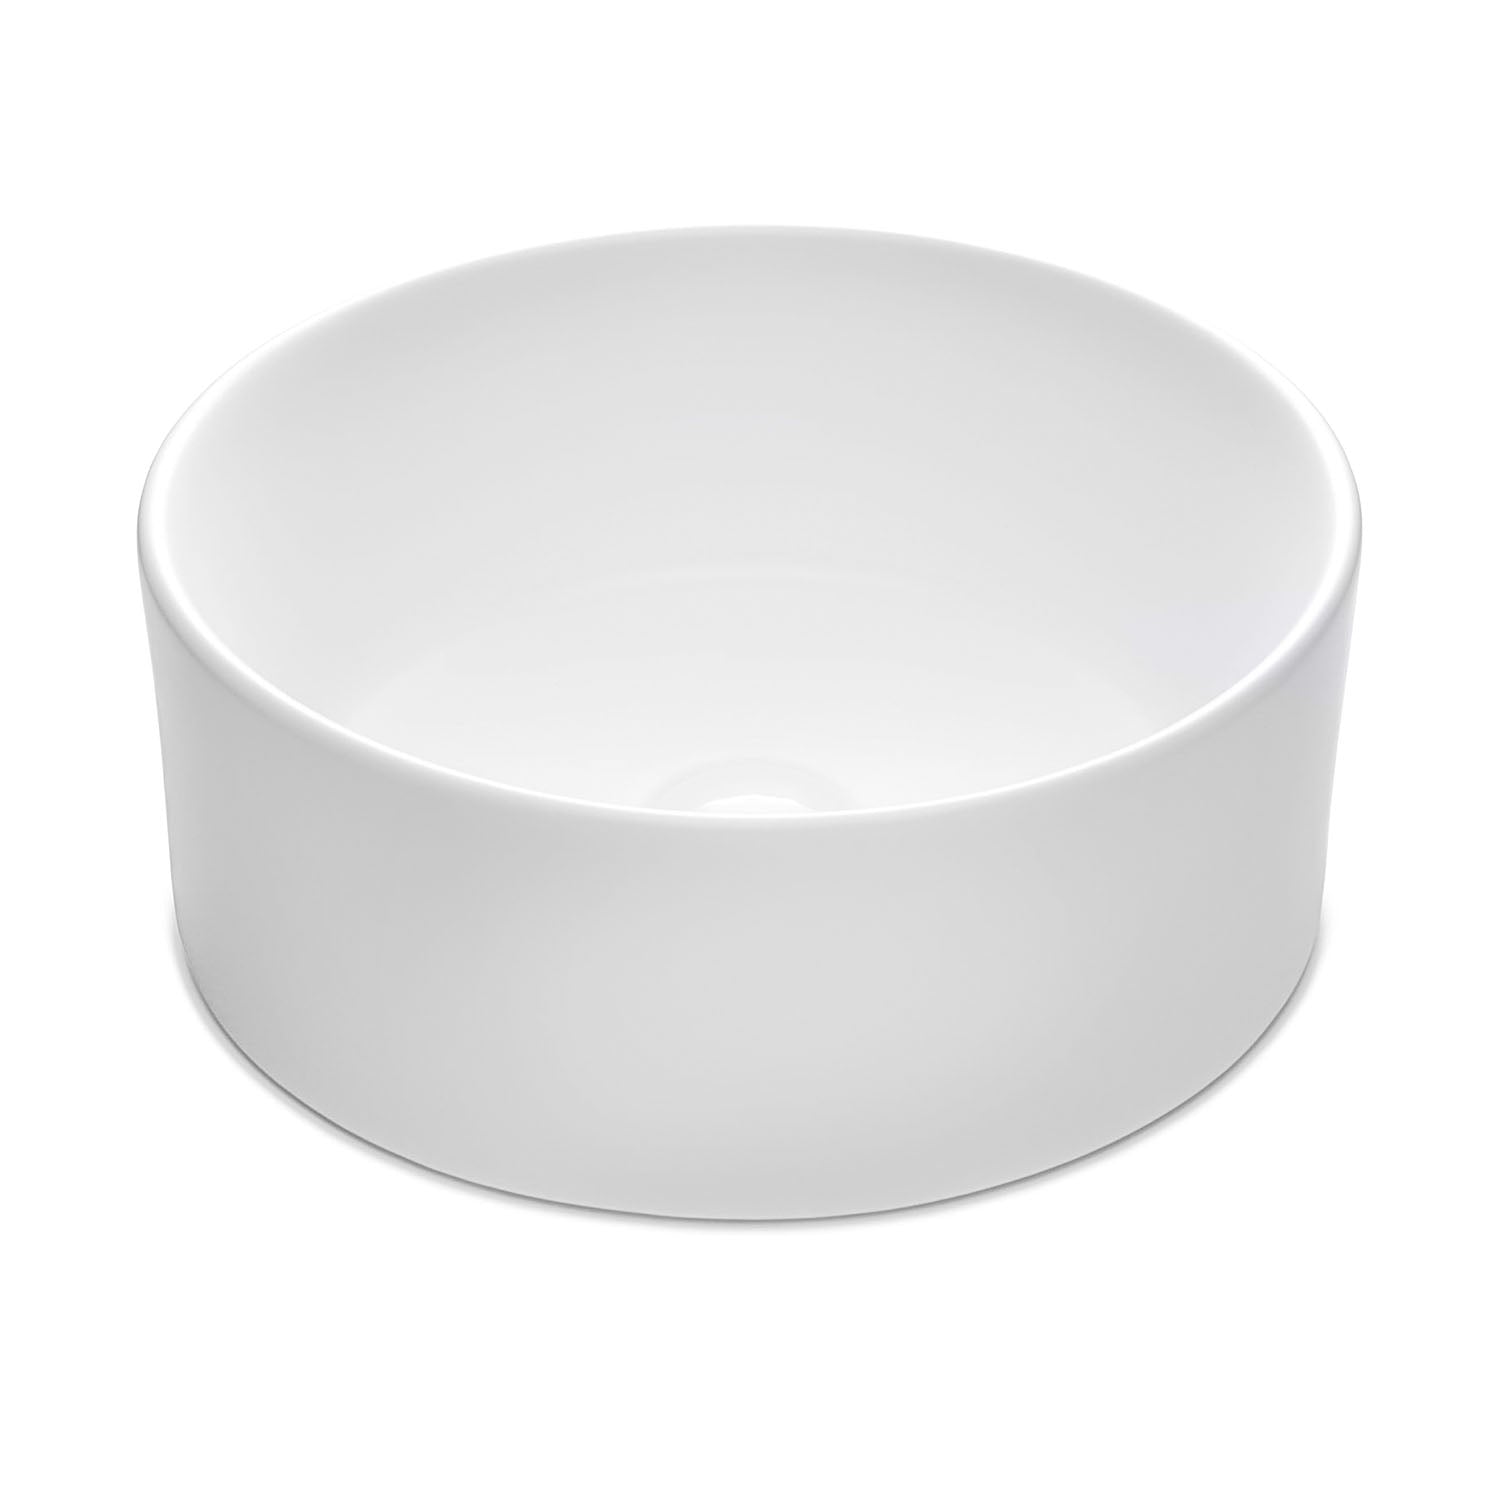 Chelsey Waschbecken in Weiß Matt aus feinster Keramik als Aufsatzwaschbecken ohne Hahnloch 400 x 400 x 145 mm